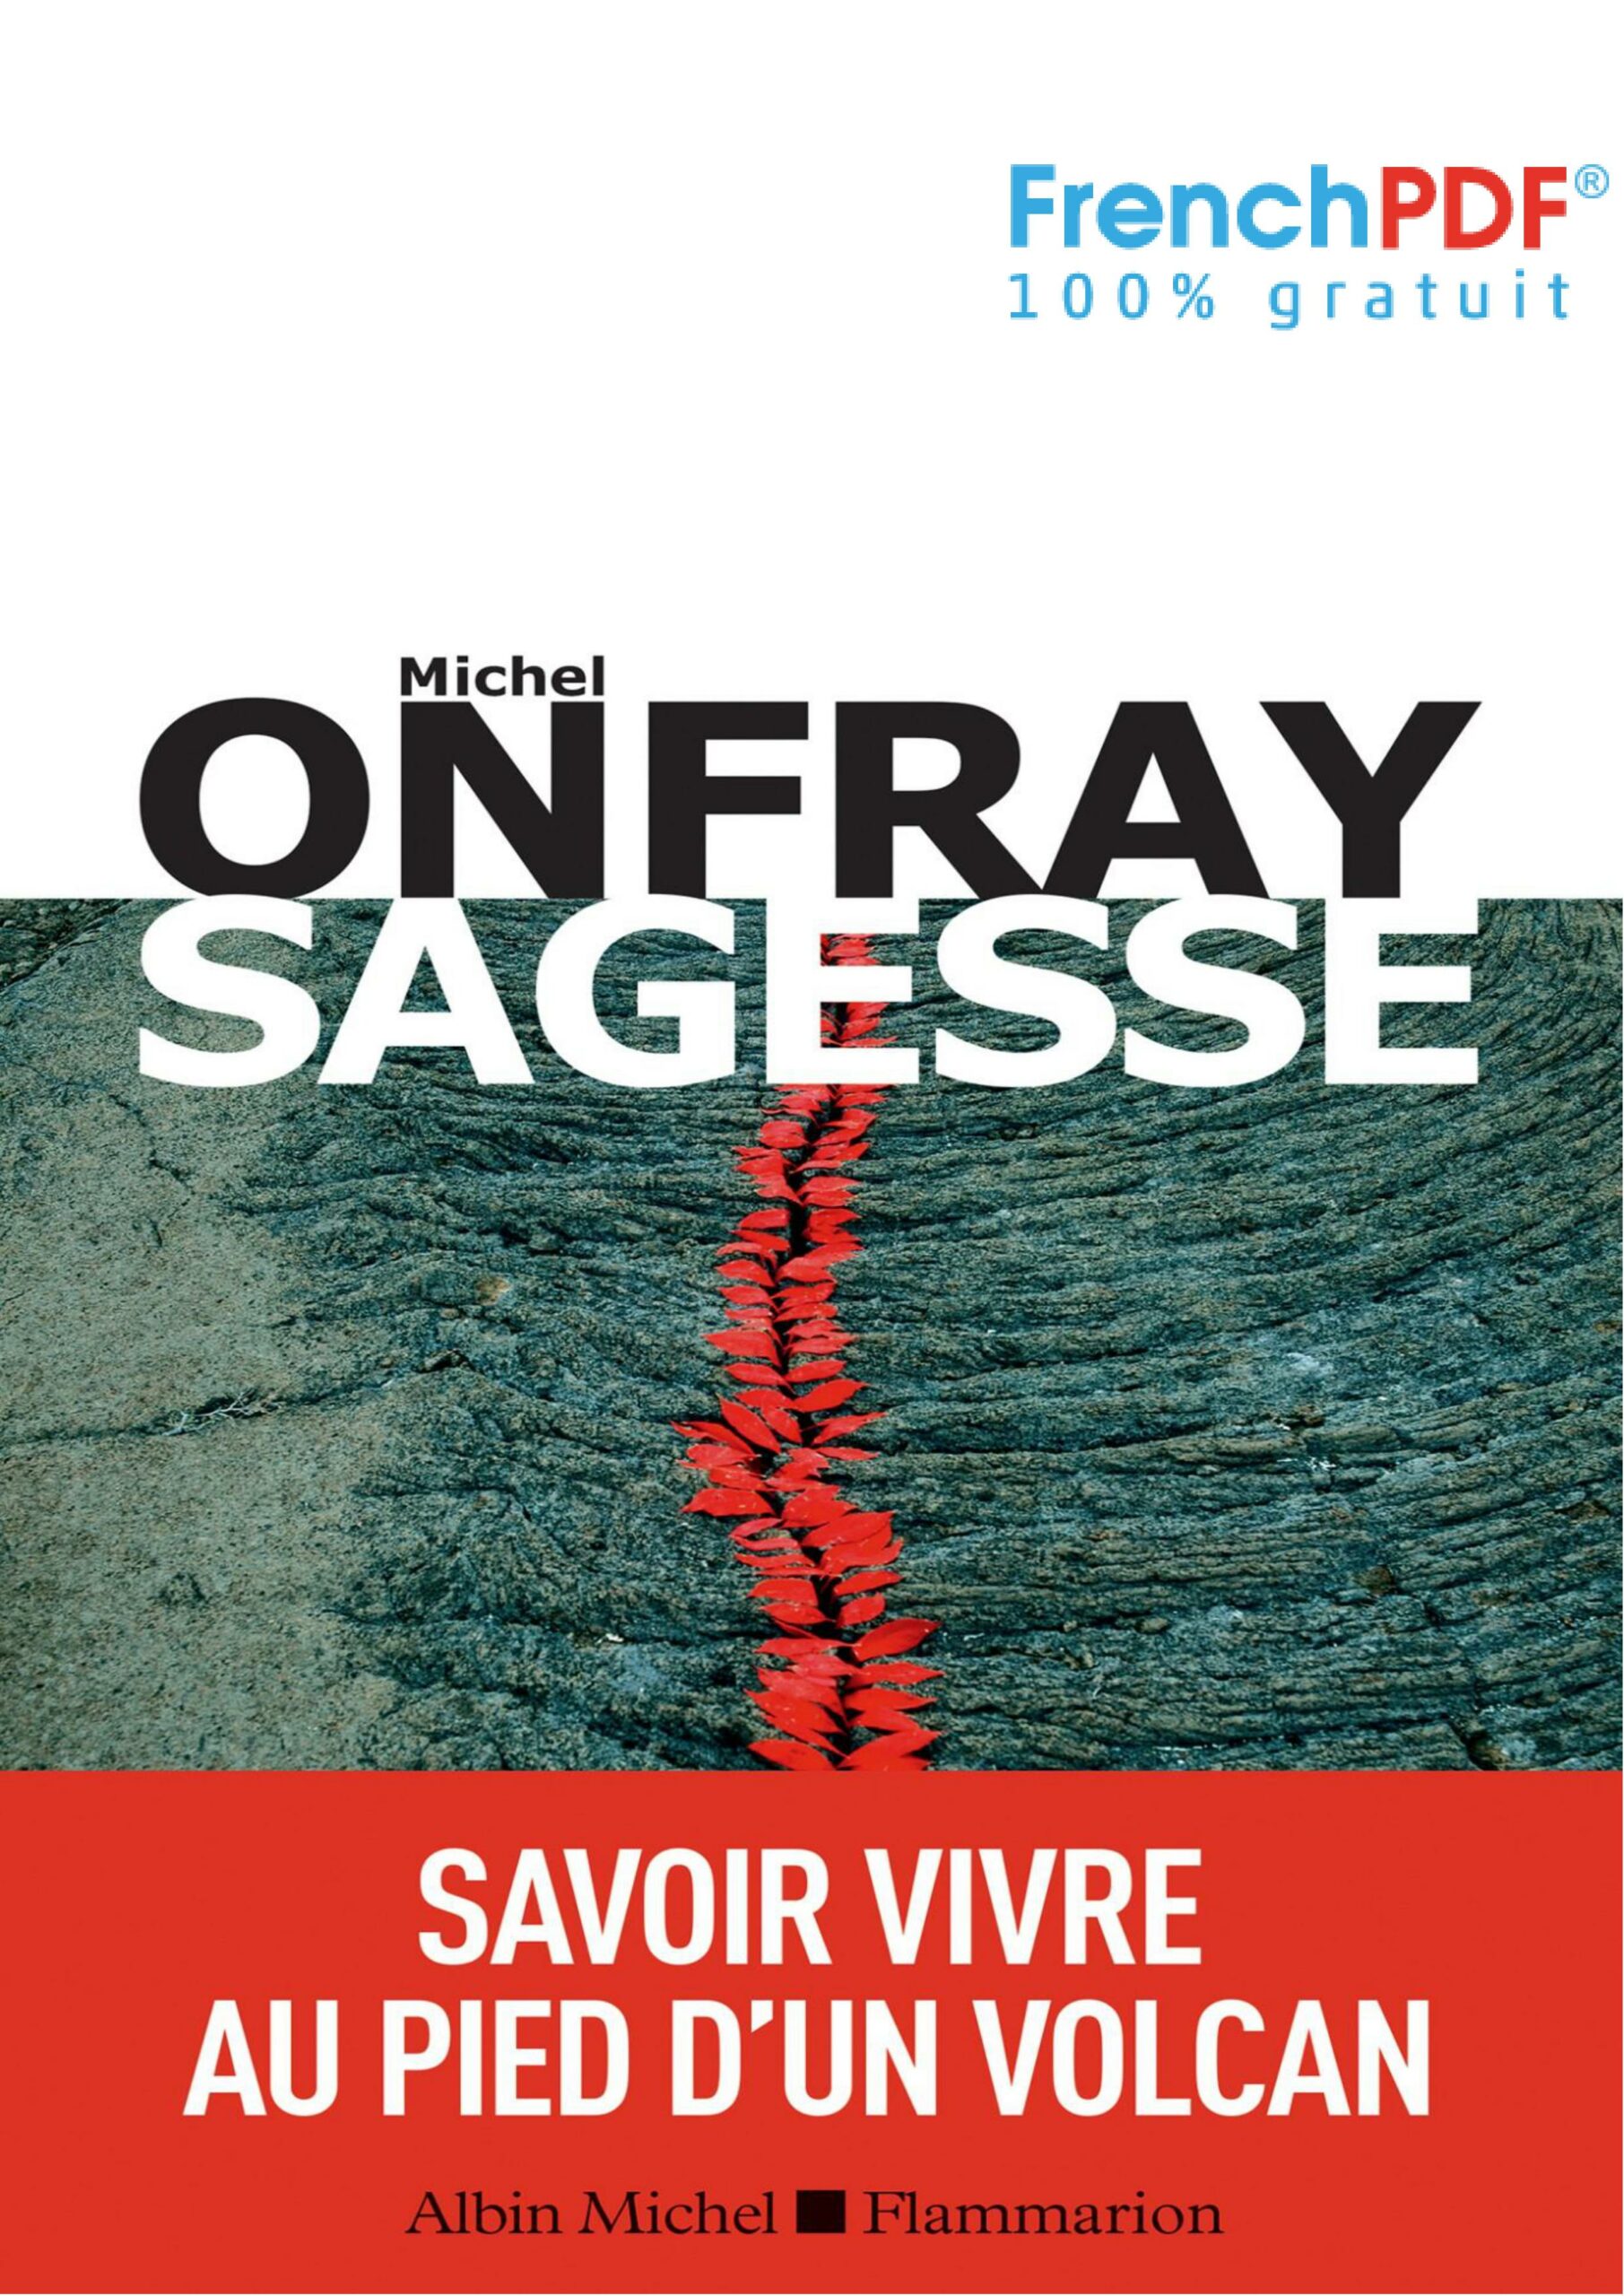 Sagesse PDF 2019 - FrenchPDF.com